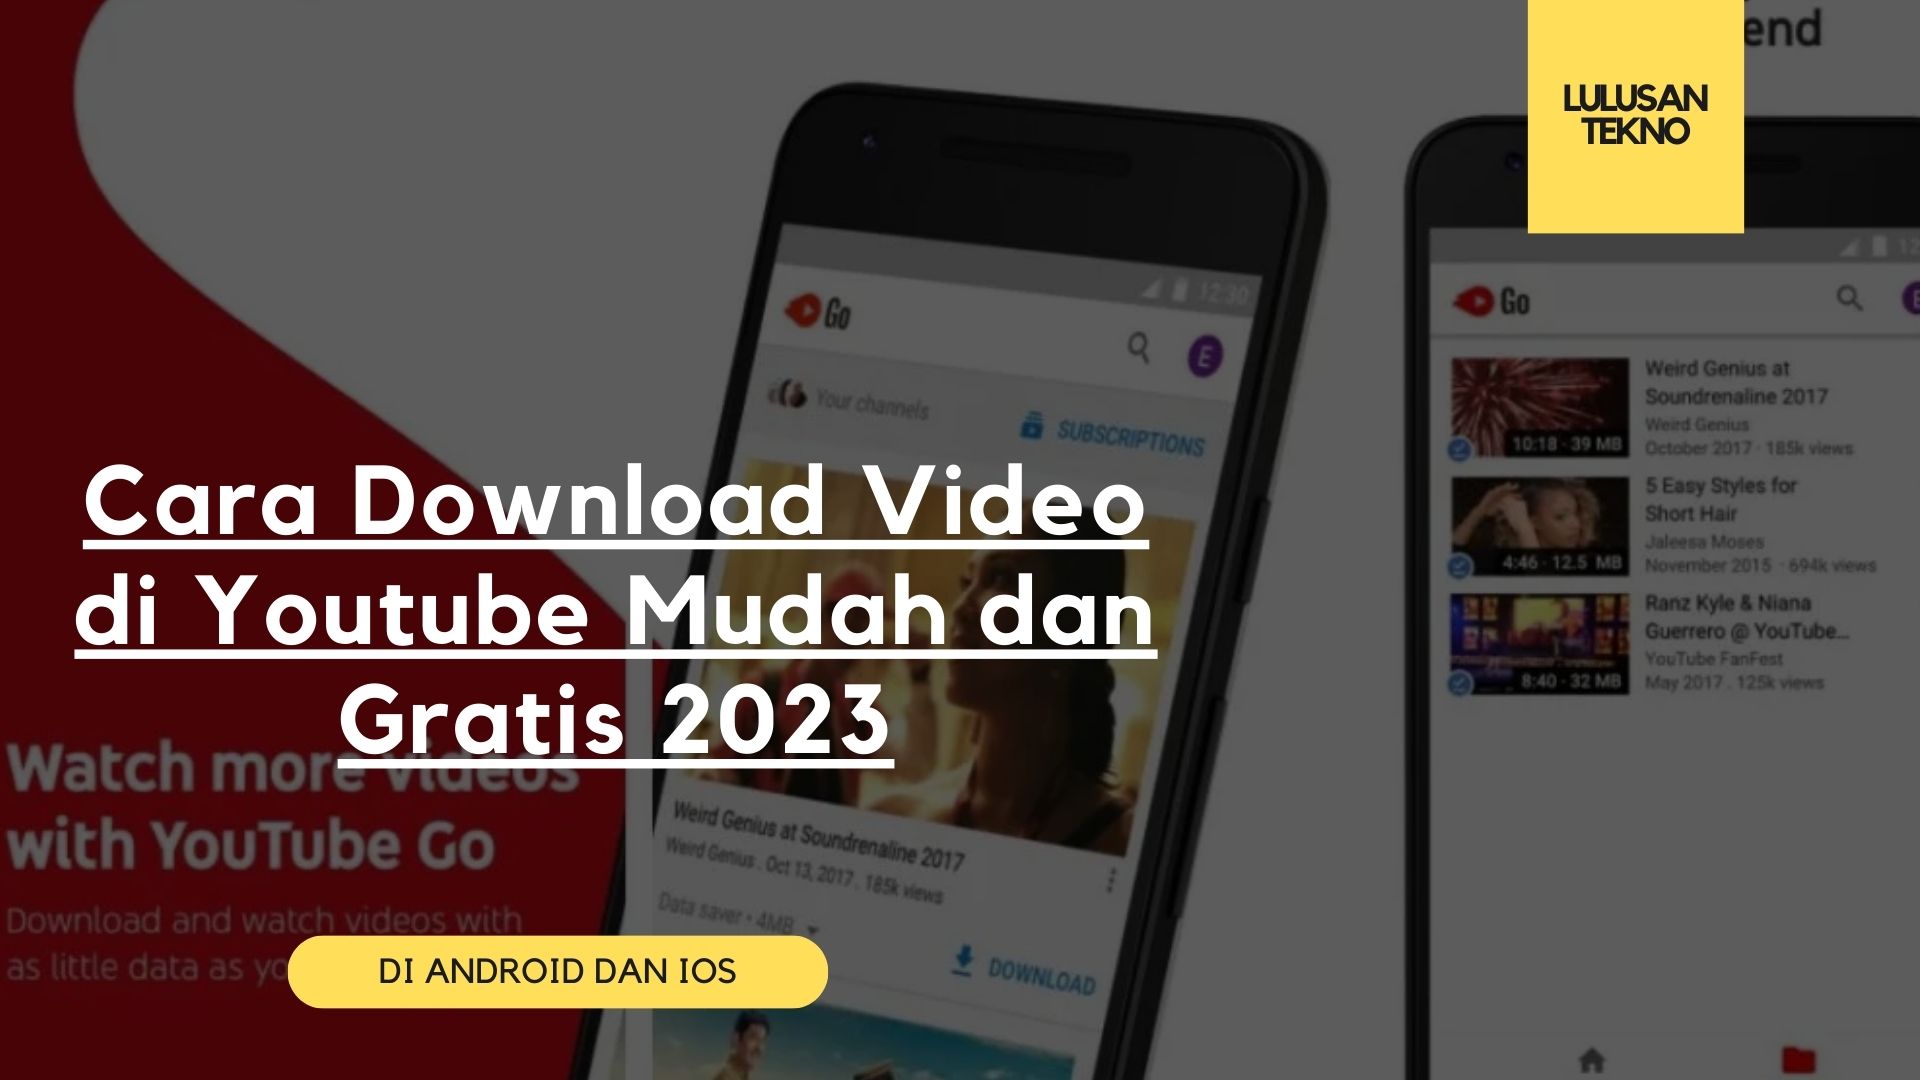 Cara Download Video di Youtube Mudah dan Gratis 2023